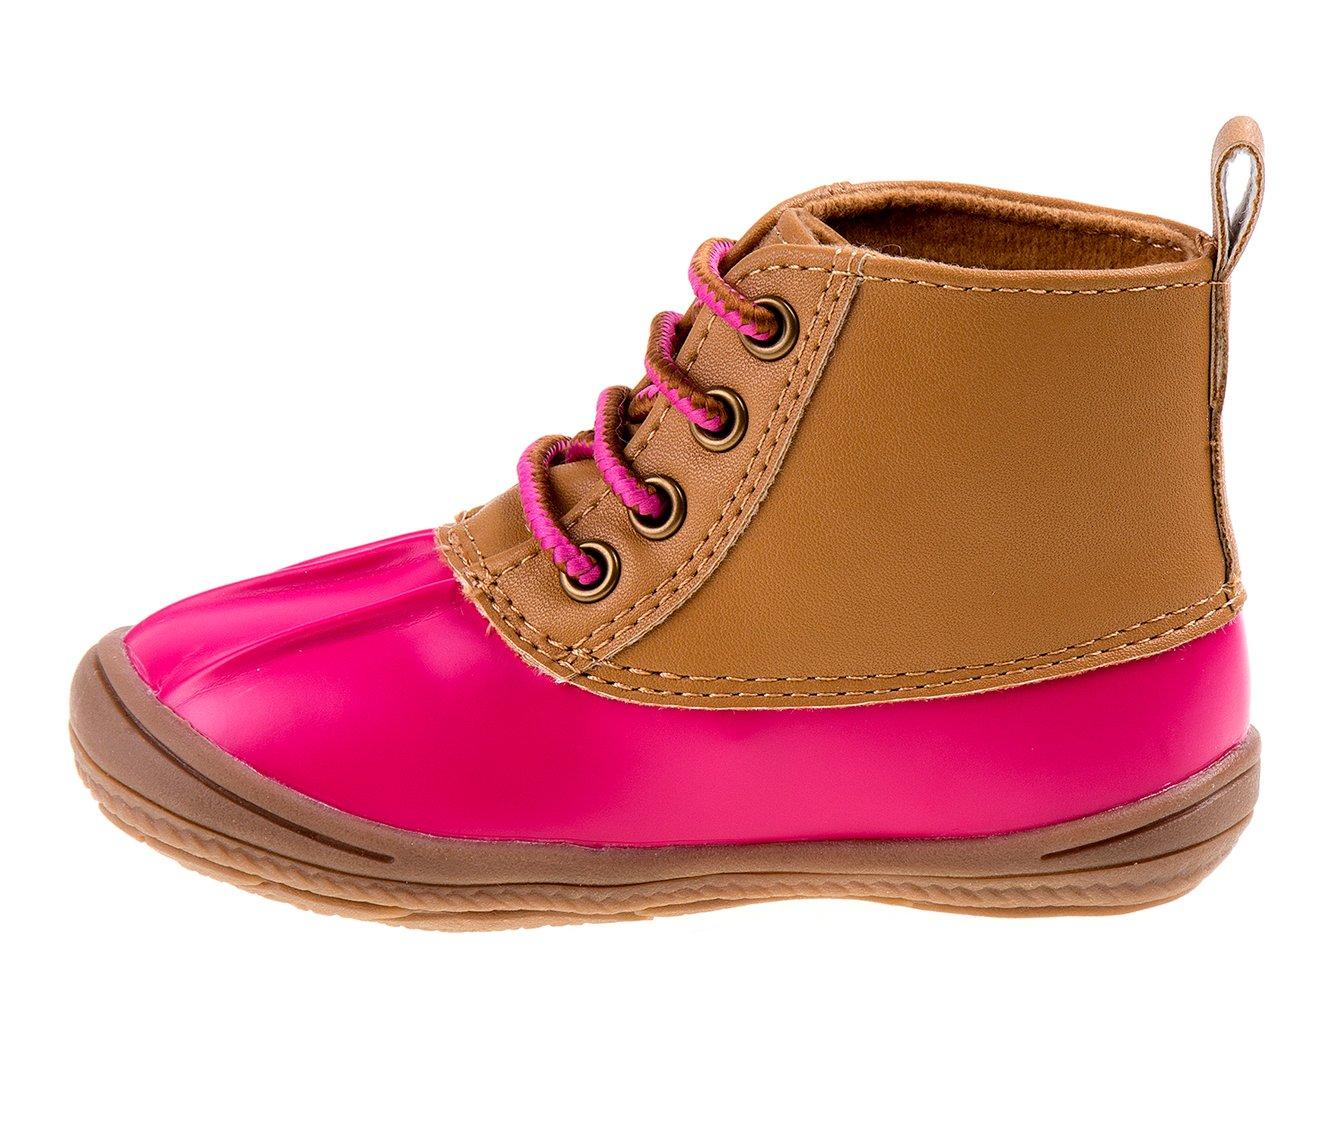 Girls' Smart Step Toddler High-Top Duck Boots